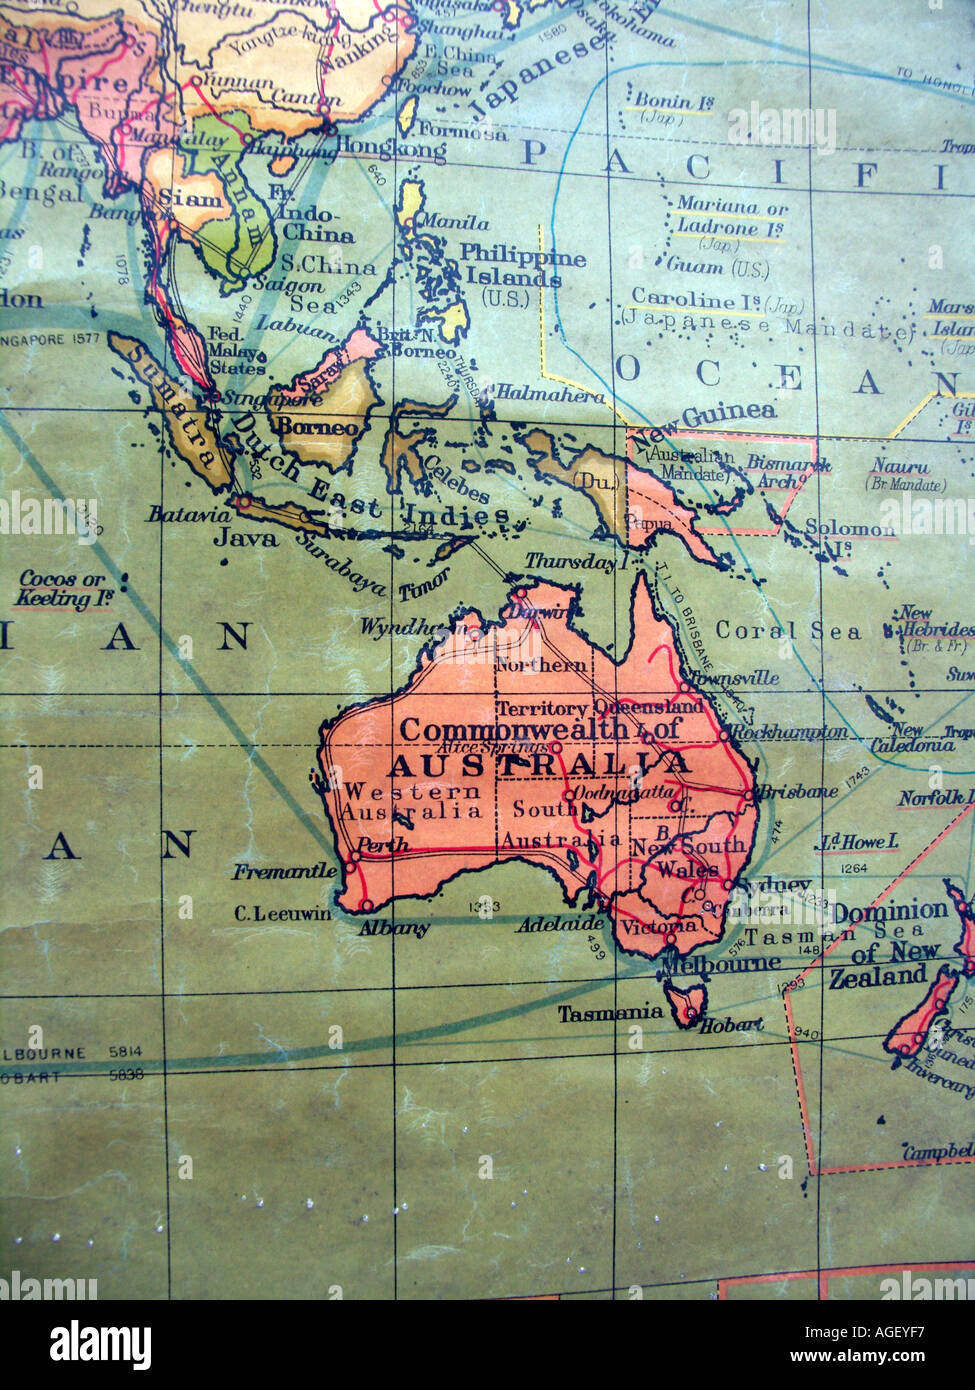 Alte Schule Wandkarte zeigt britische Empire rot - Fokus auf Australien, Neuguinea, Indonesien, Borneo, Süd-Ost-Asien Stockfoto